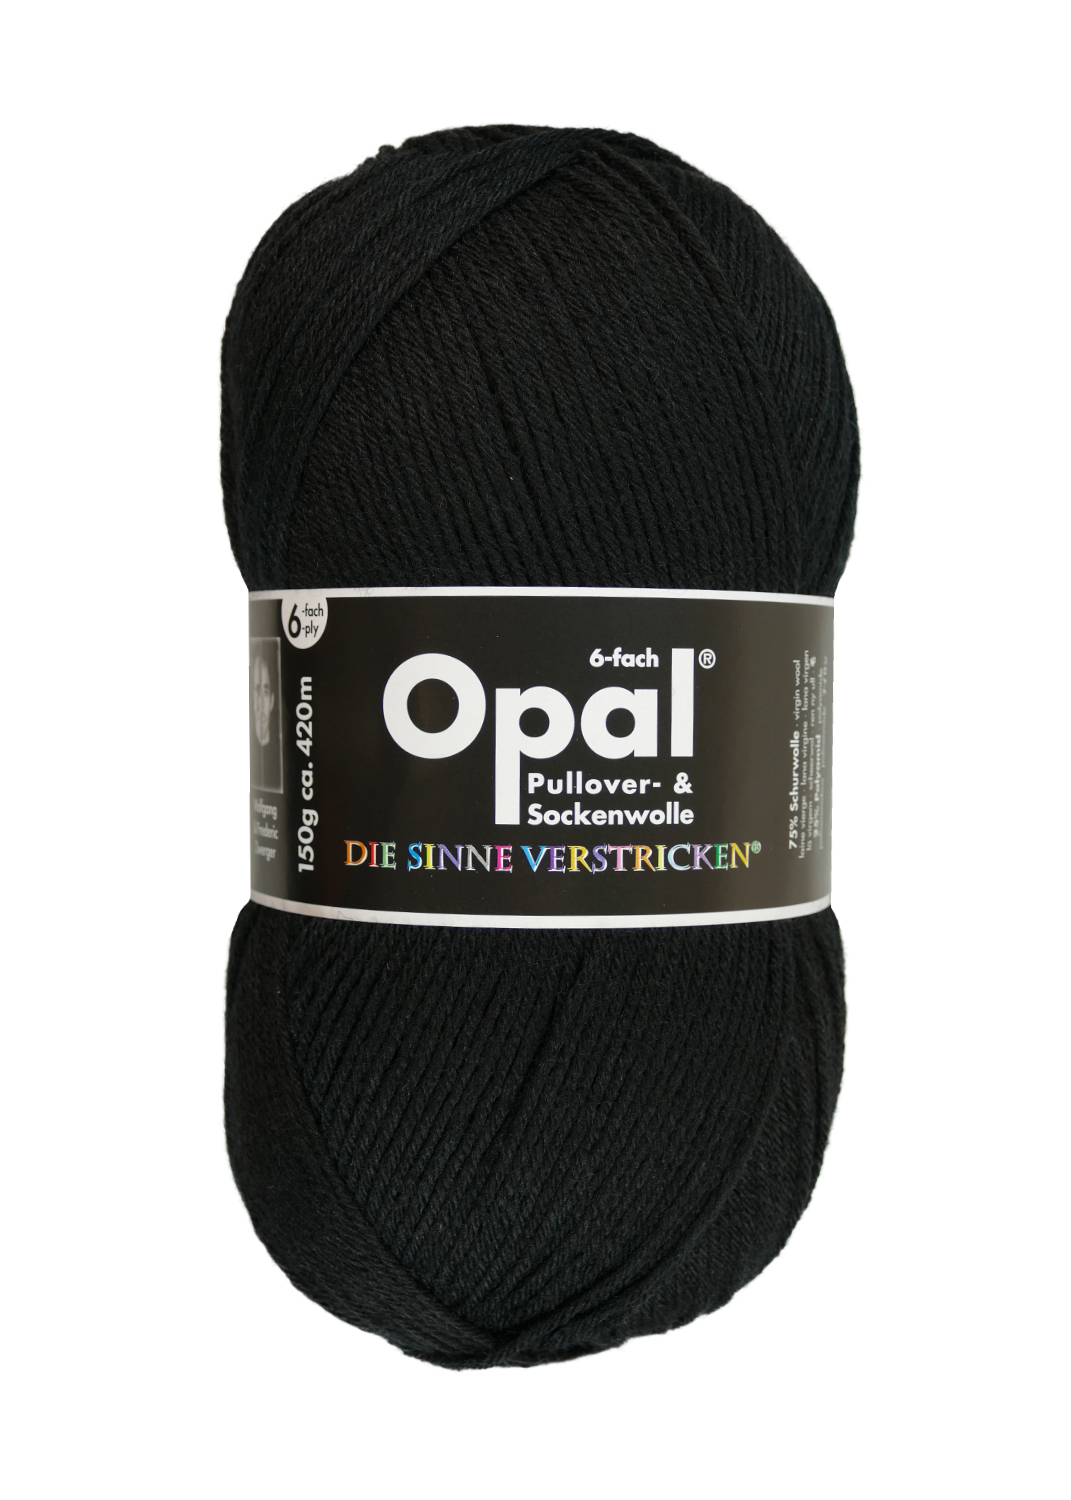 OPAL Uni - 6-fach Sockenwolle 5306 - tiefschwarz